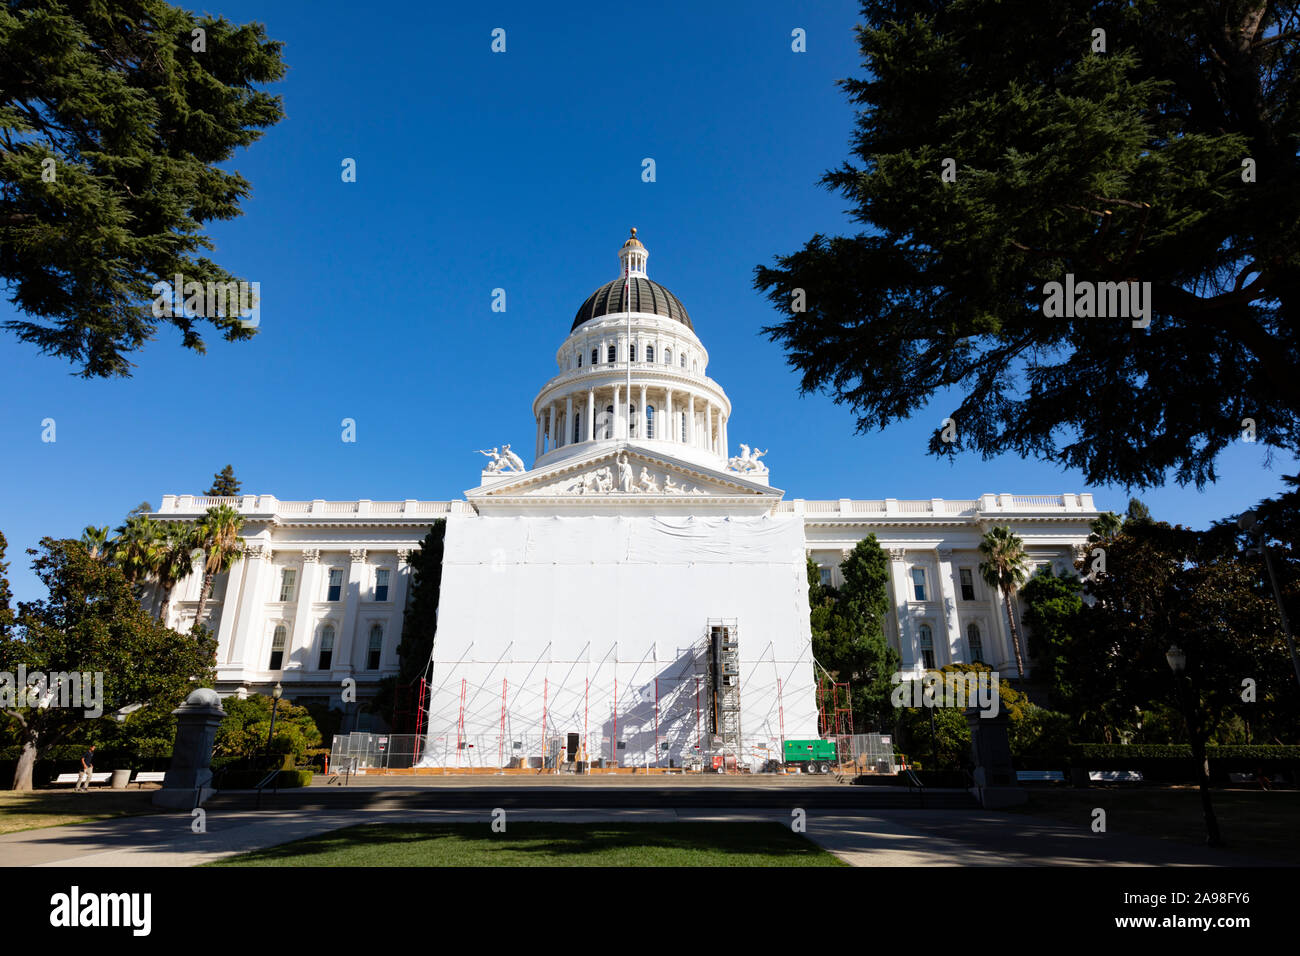 Das State Capitol Building mit Bau schützende Folie auf der Vorderseite. Sacramento, Kalifornien, Vereinigte Staaten von Amerika. USA Stockfoto